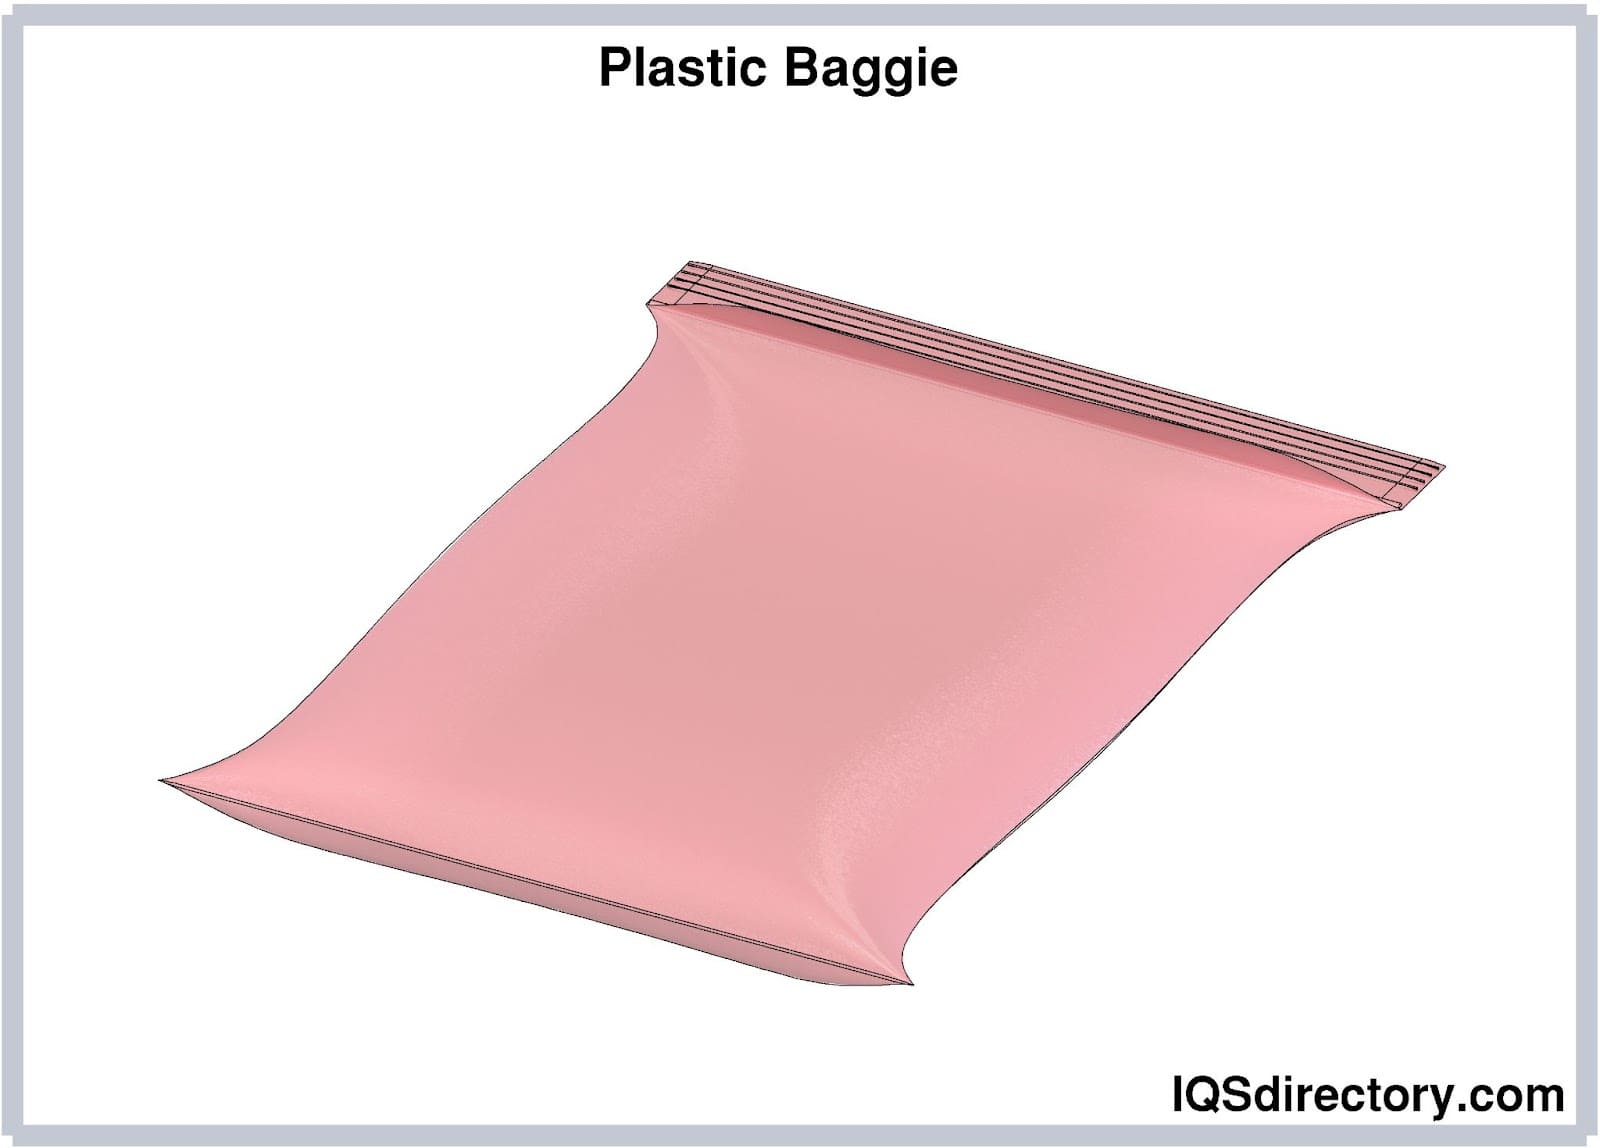 Plastic Baggies